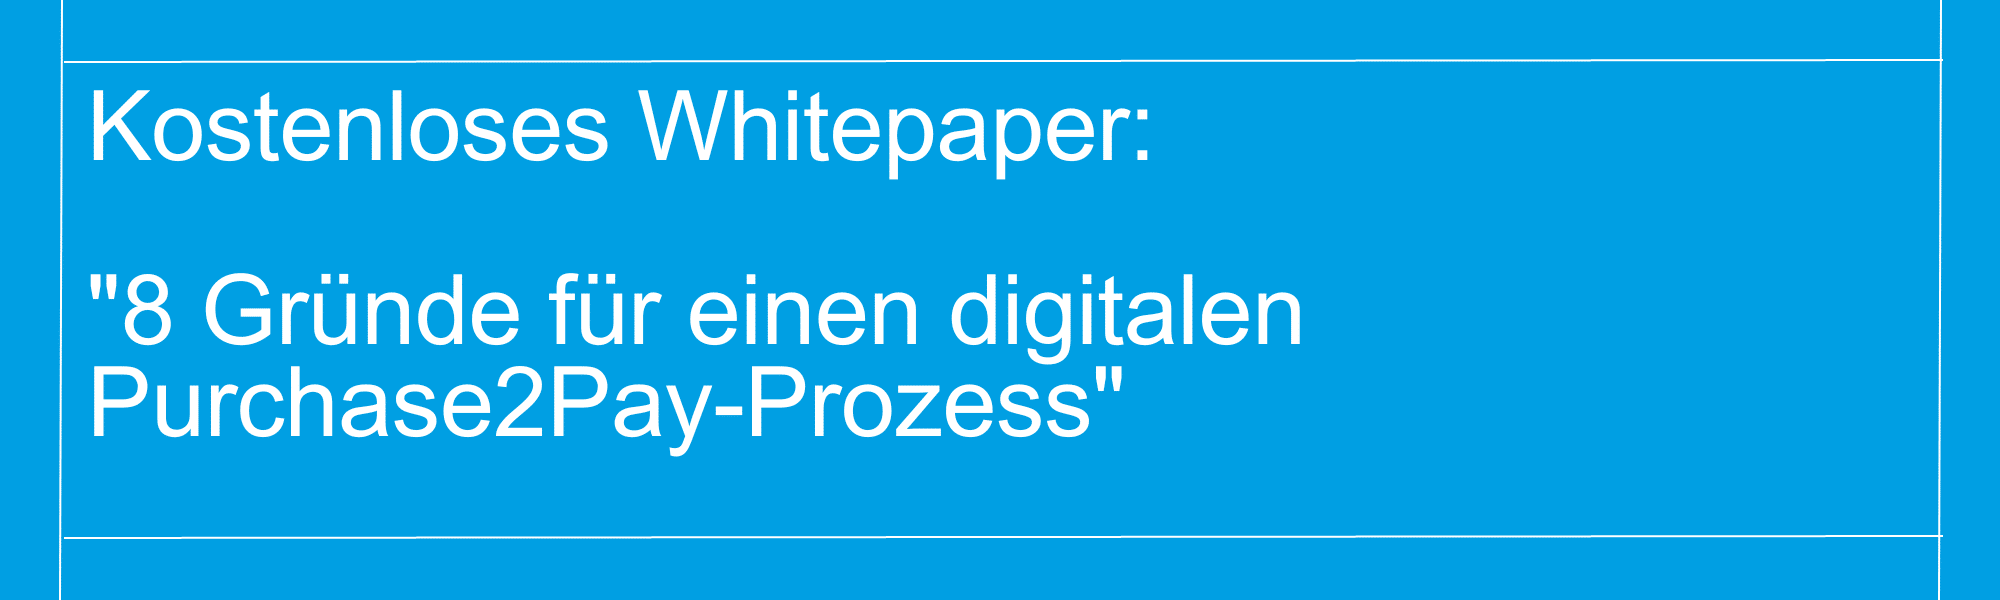 Banner: Whitepaper download "8 Gründe für einen digitalen Purchase2Pay-Prozess"